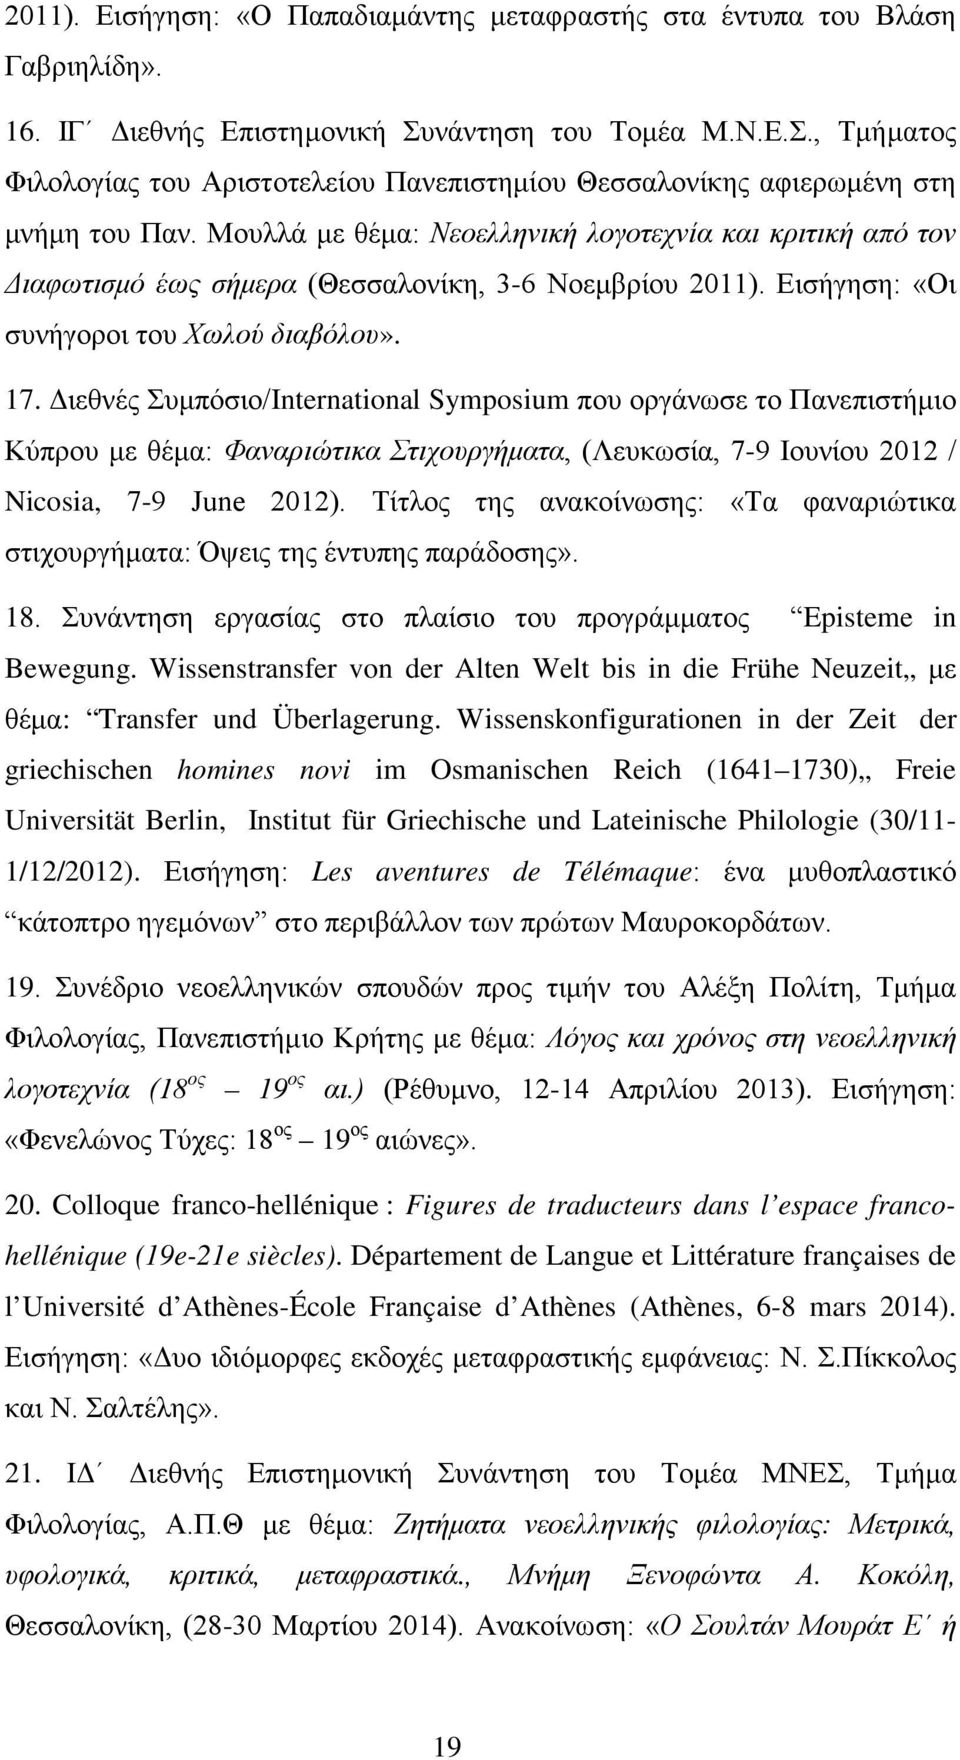 Μουλλά με θέμα: Νεοελληνική λογοτεχνία και κριτική από τον Διαφωτισμό έως σήμερα (Θεσσαλονίκη, 3-6 Νοεμβρίου 2011). Εισήγηση: «Οι συνήγοροι του Χωλού διαβόλου». 17.